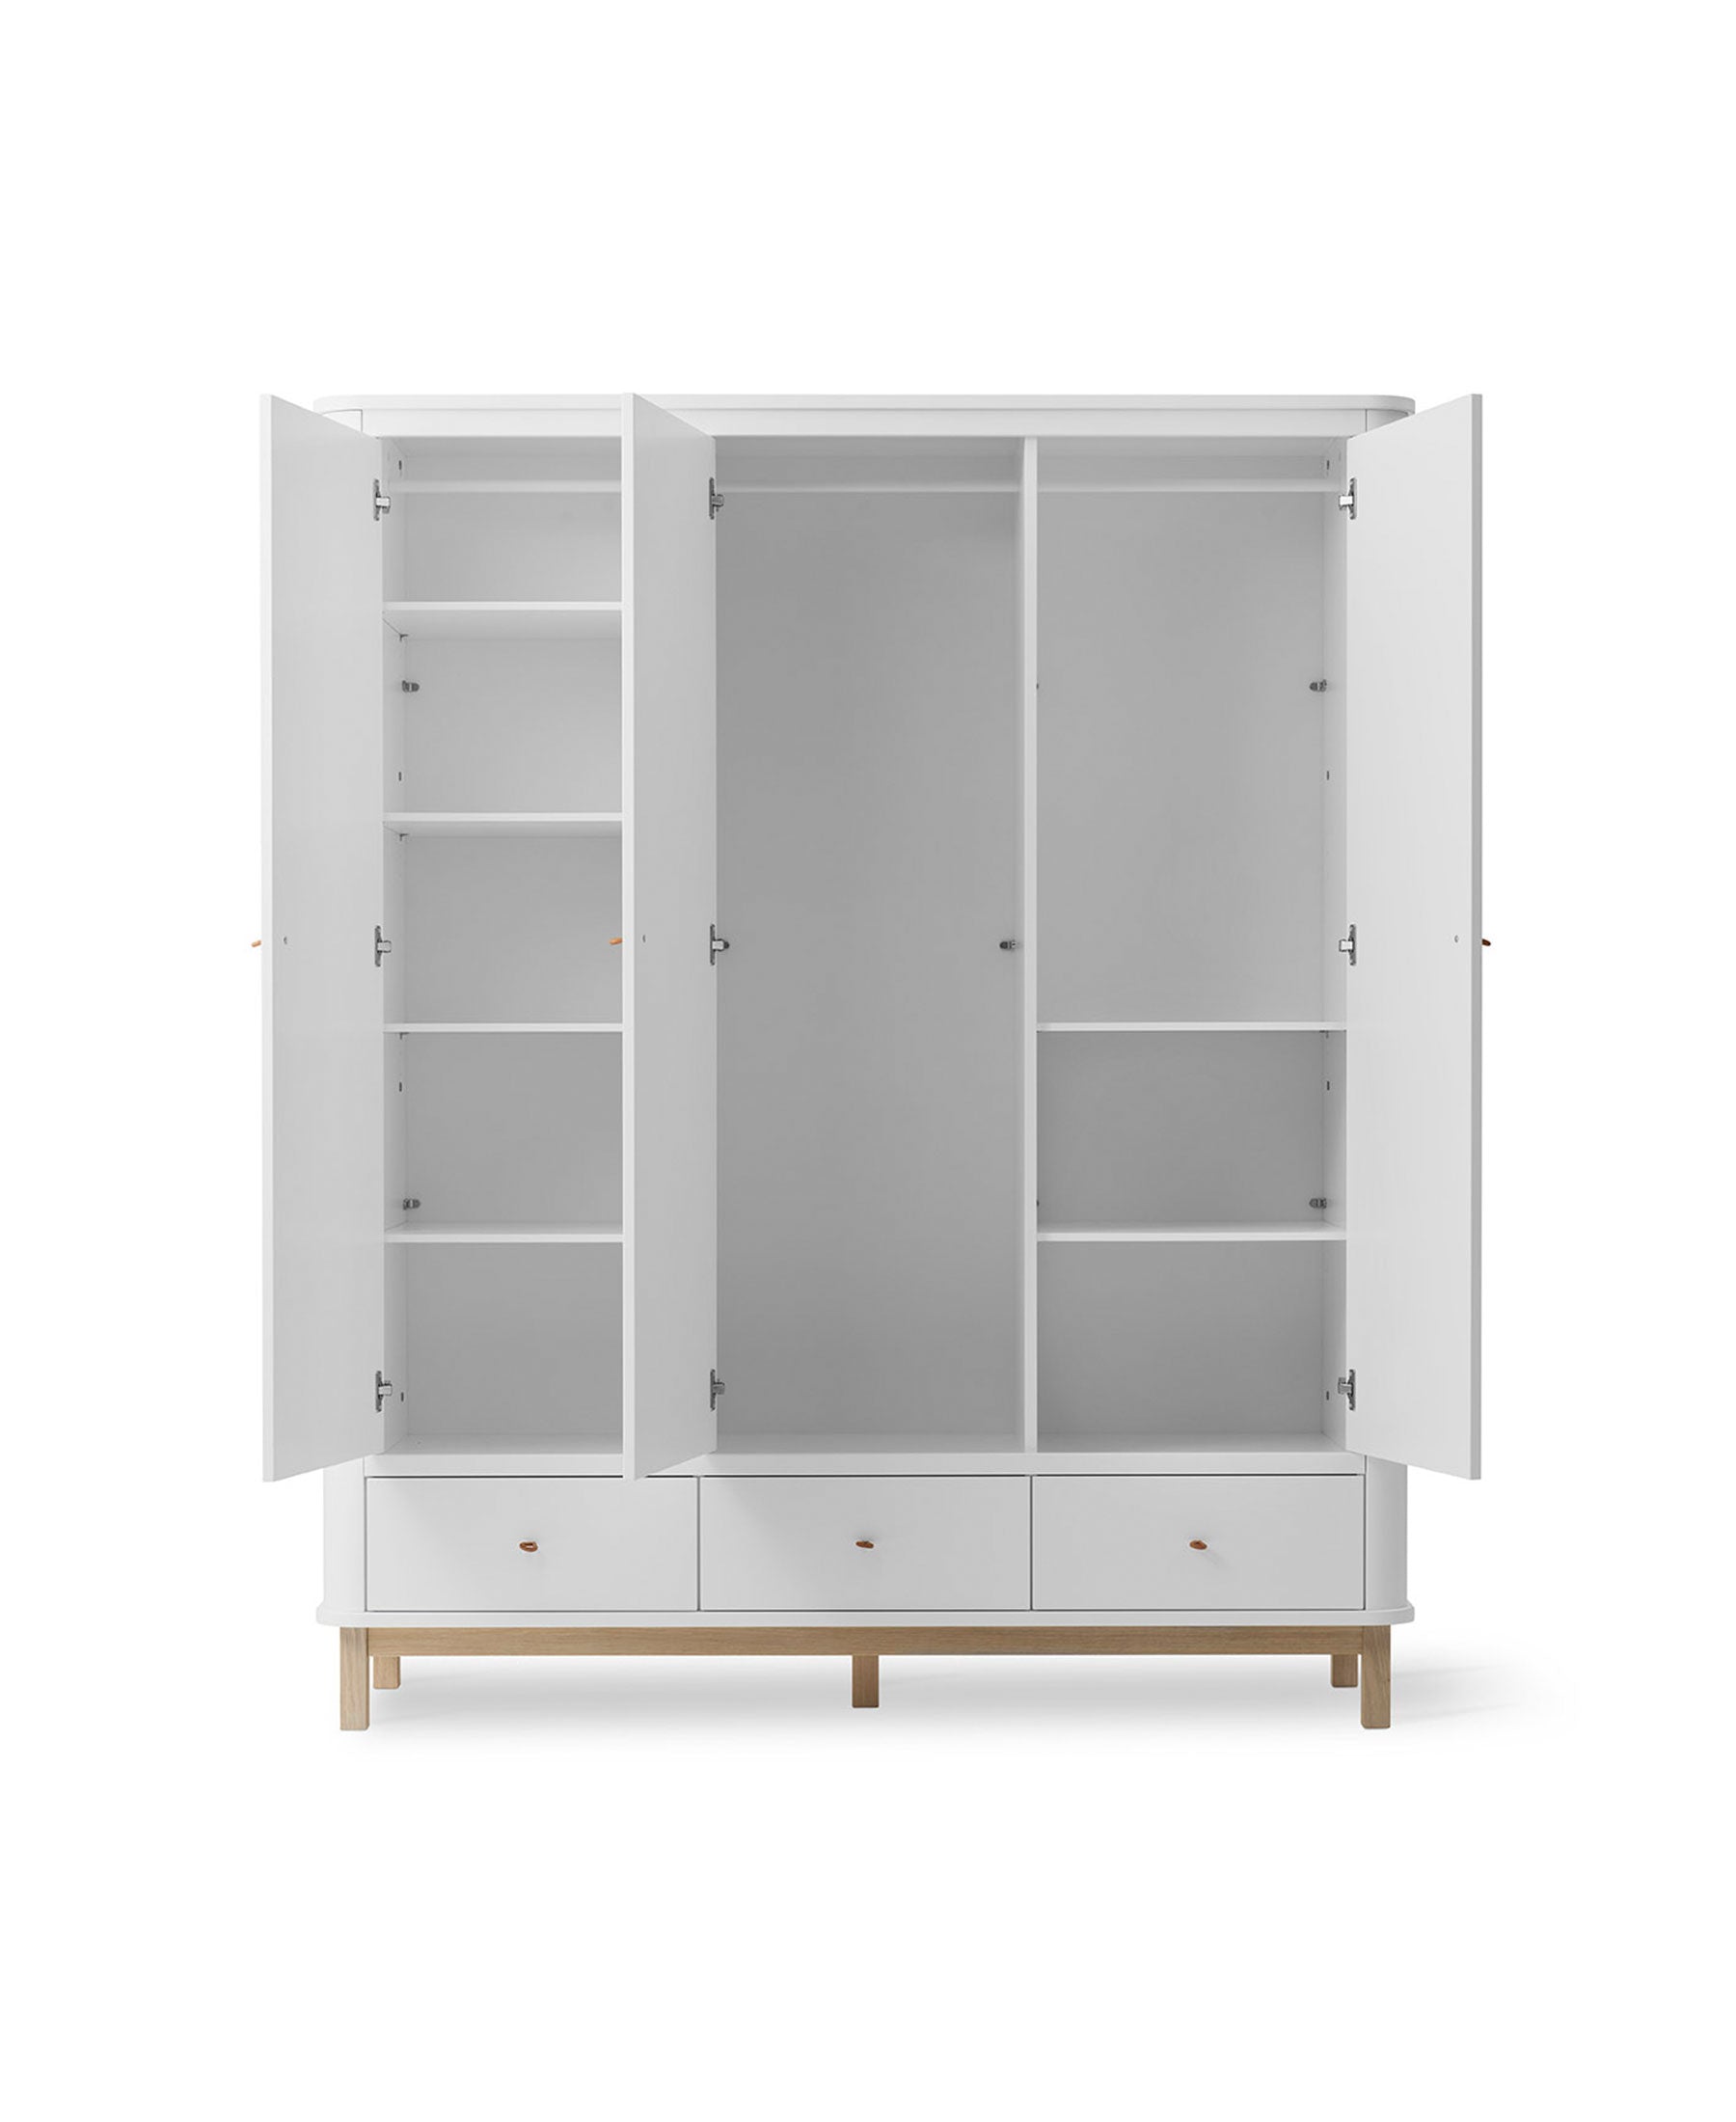 Oliver Furniture 3-deurs wood kledingkast in wit/eikenhout. 